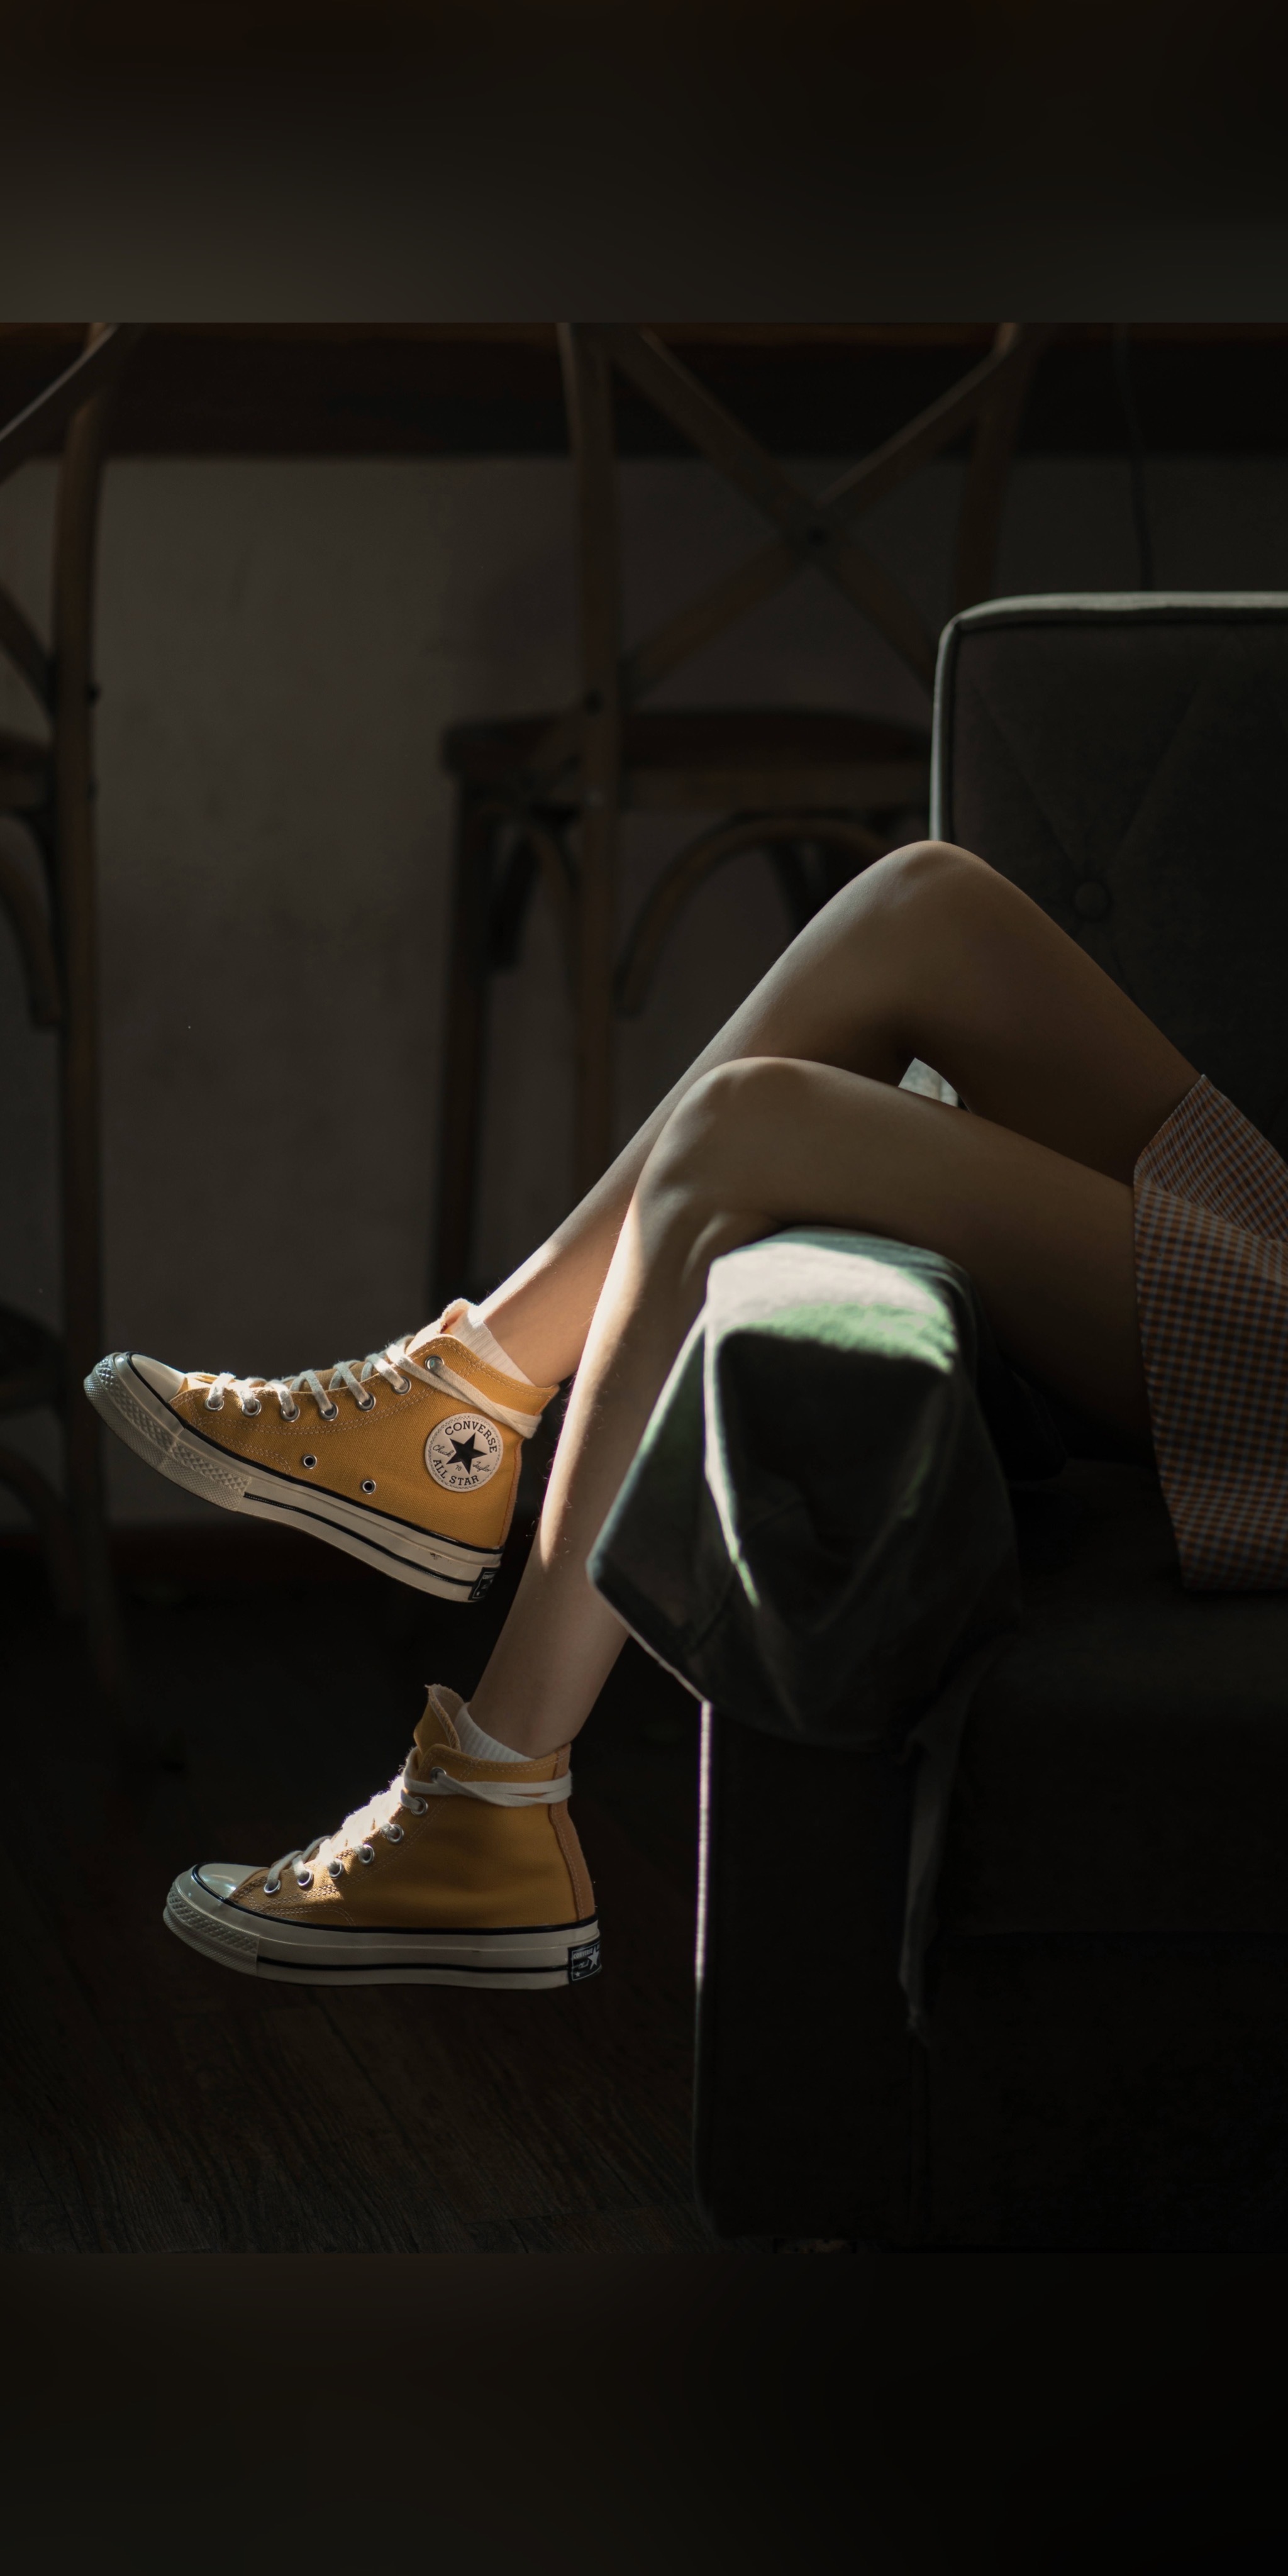 Vertical Converse Legs Skirt Sunlight Natural Light Sitting Chair Portrait Display 2048x4096